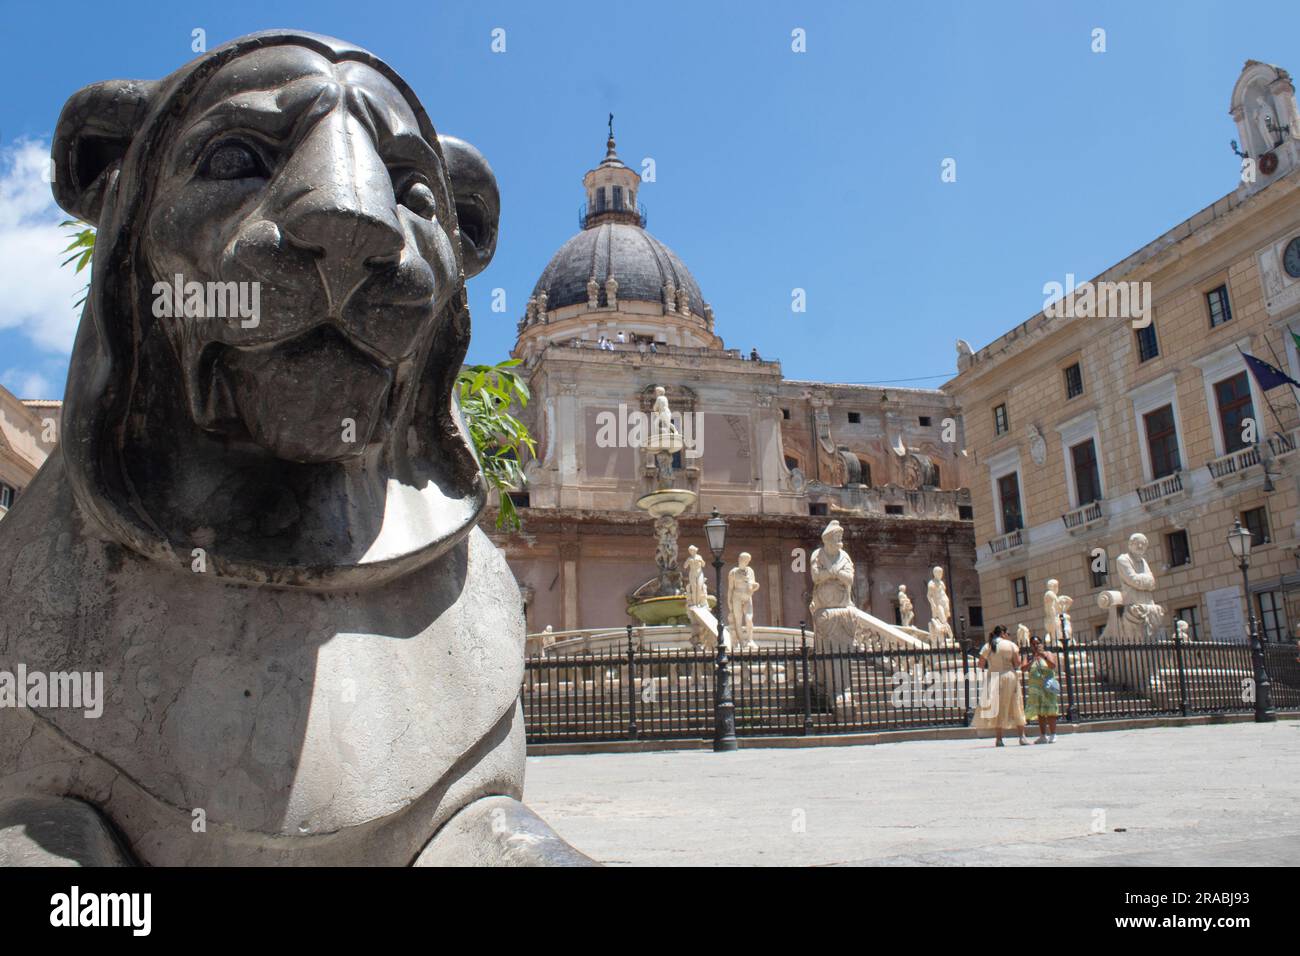 Löwenstatue im Praetorianischen Brunnen - Fontana Pretoria - mit der Kuppel von Santa Caterina im Hintergrund Piazza Pretoria Palermo Sizilien Italien Stockfoto